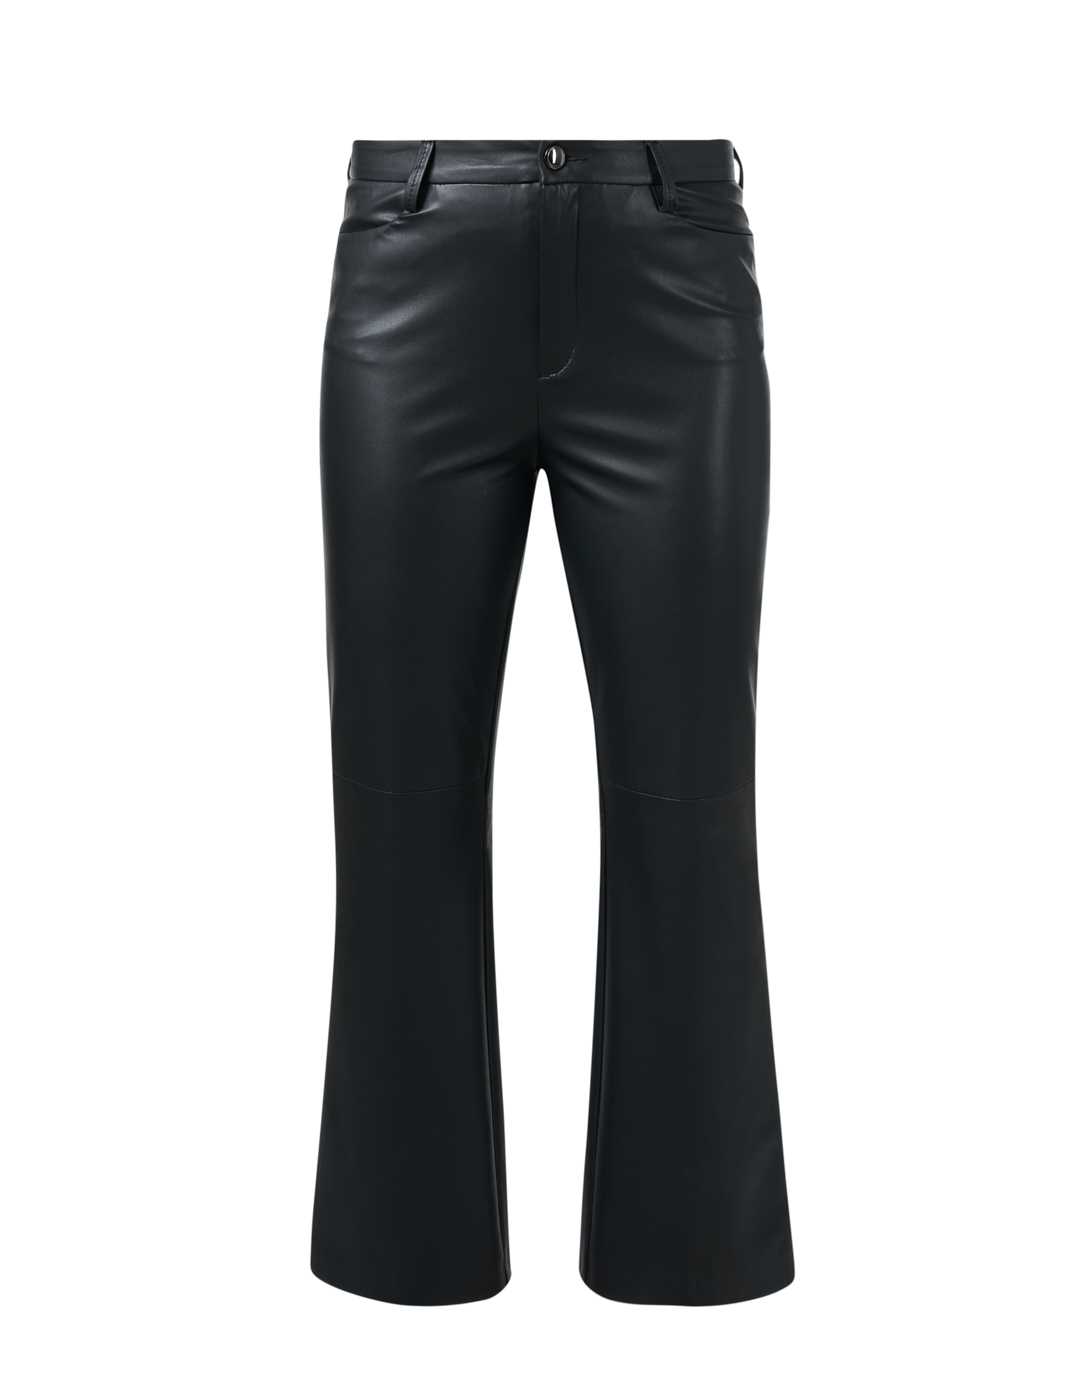 Max Vegan Leather Pant